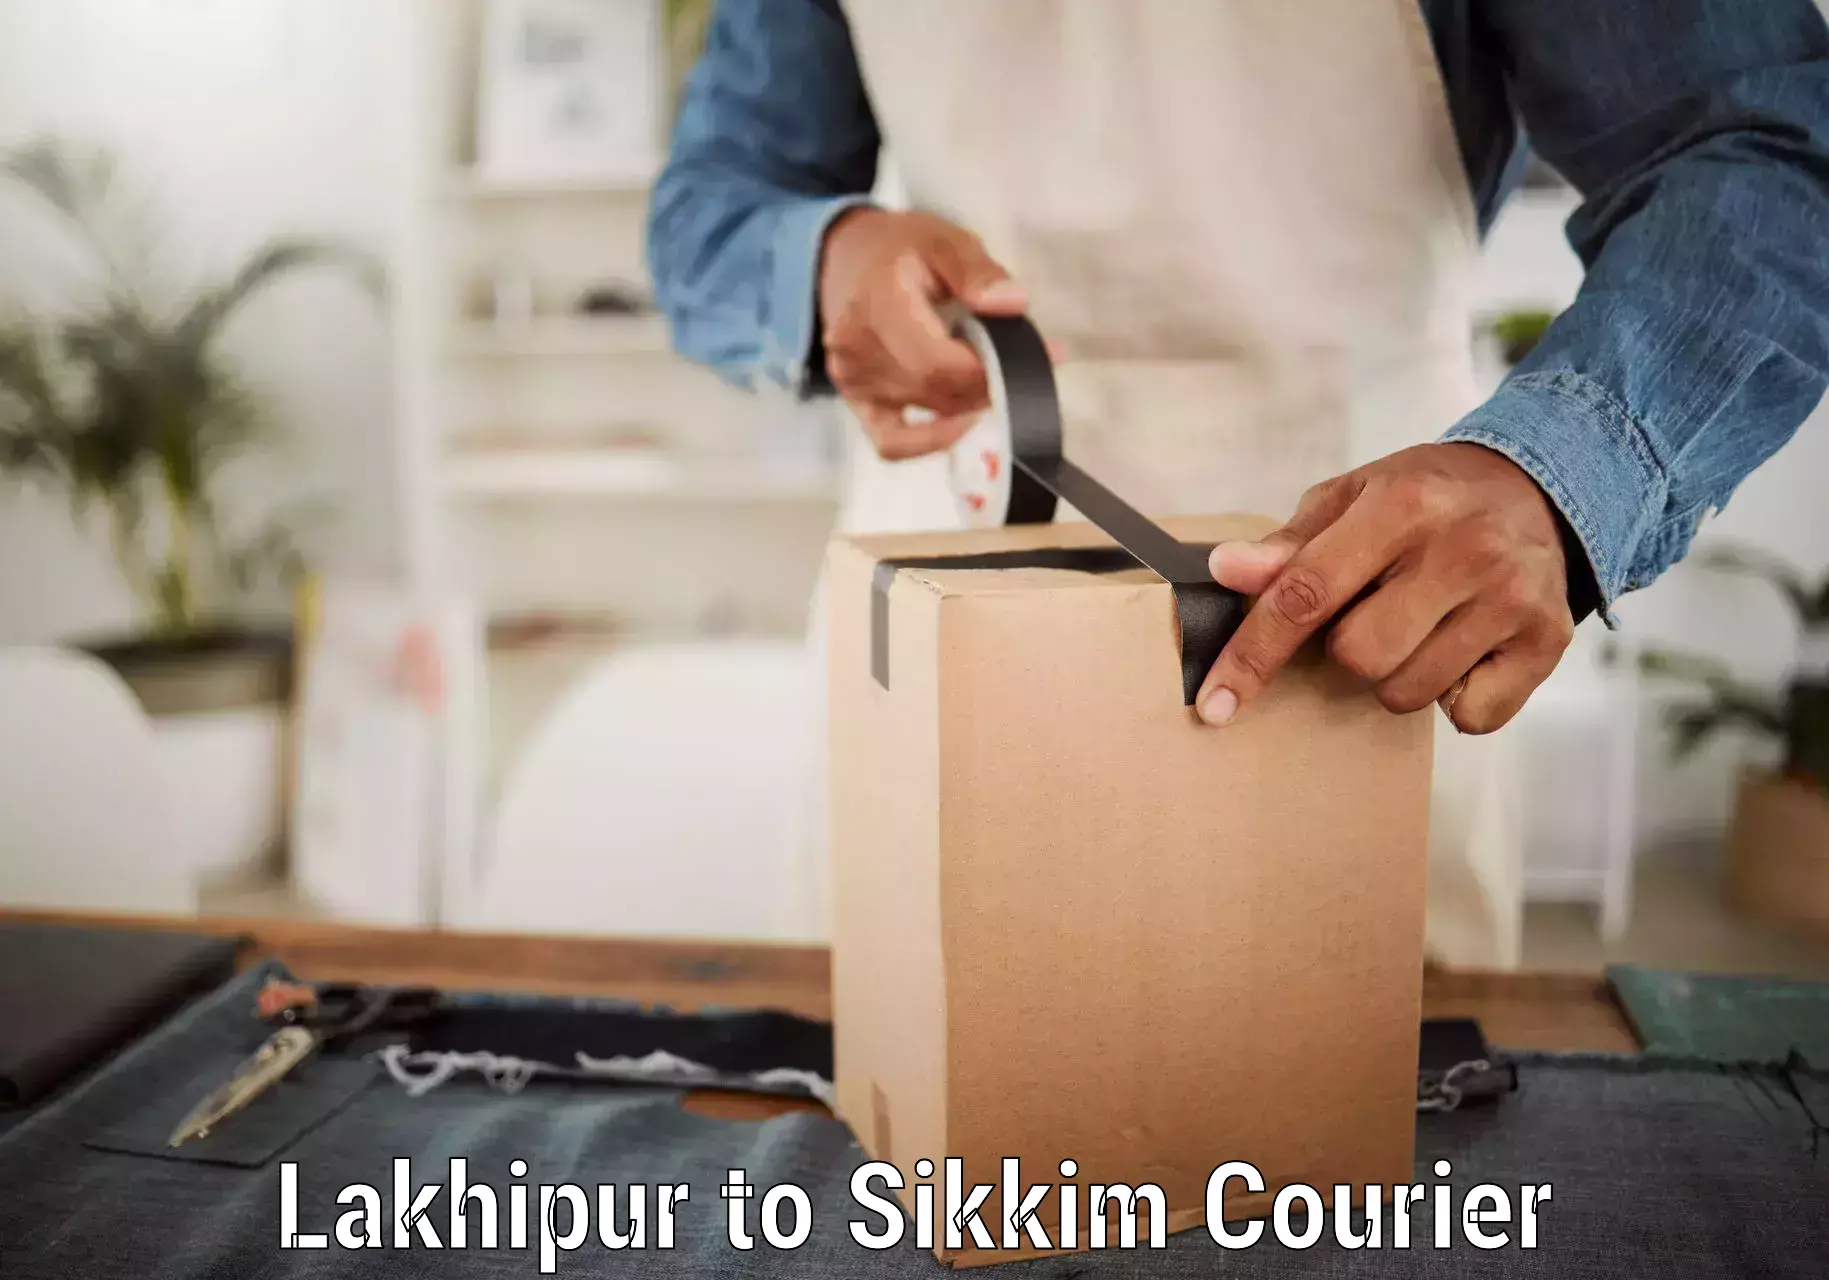 Courier service partnerships Lakhipur to Namchi